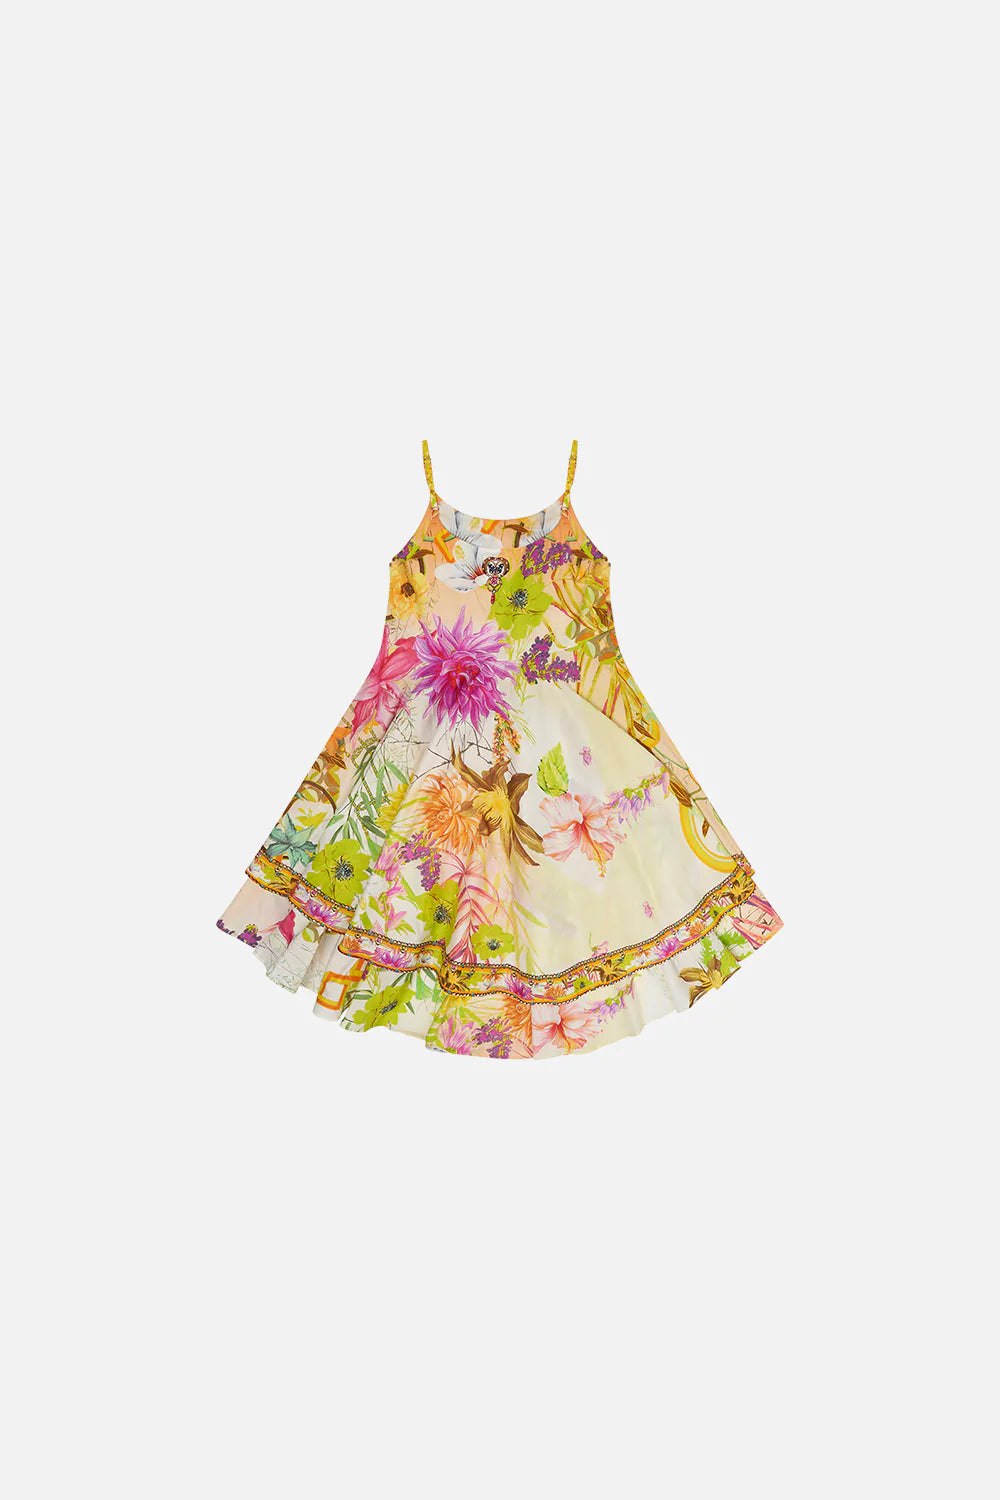 Camilla Children’s How Does Your Garden Grow Round Neck Tiered Dress